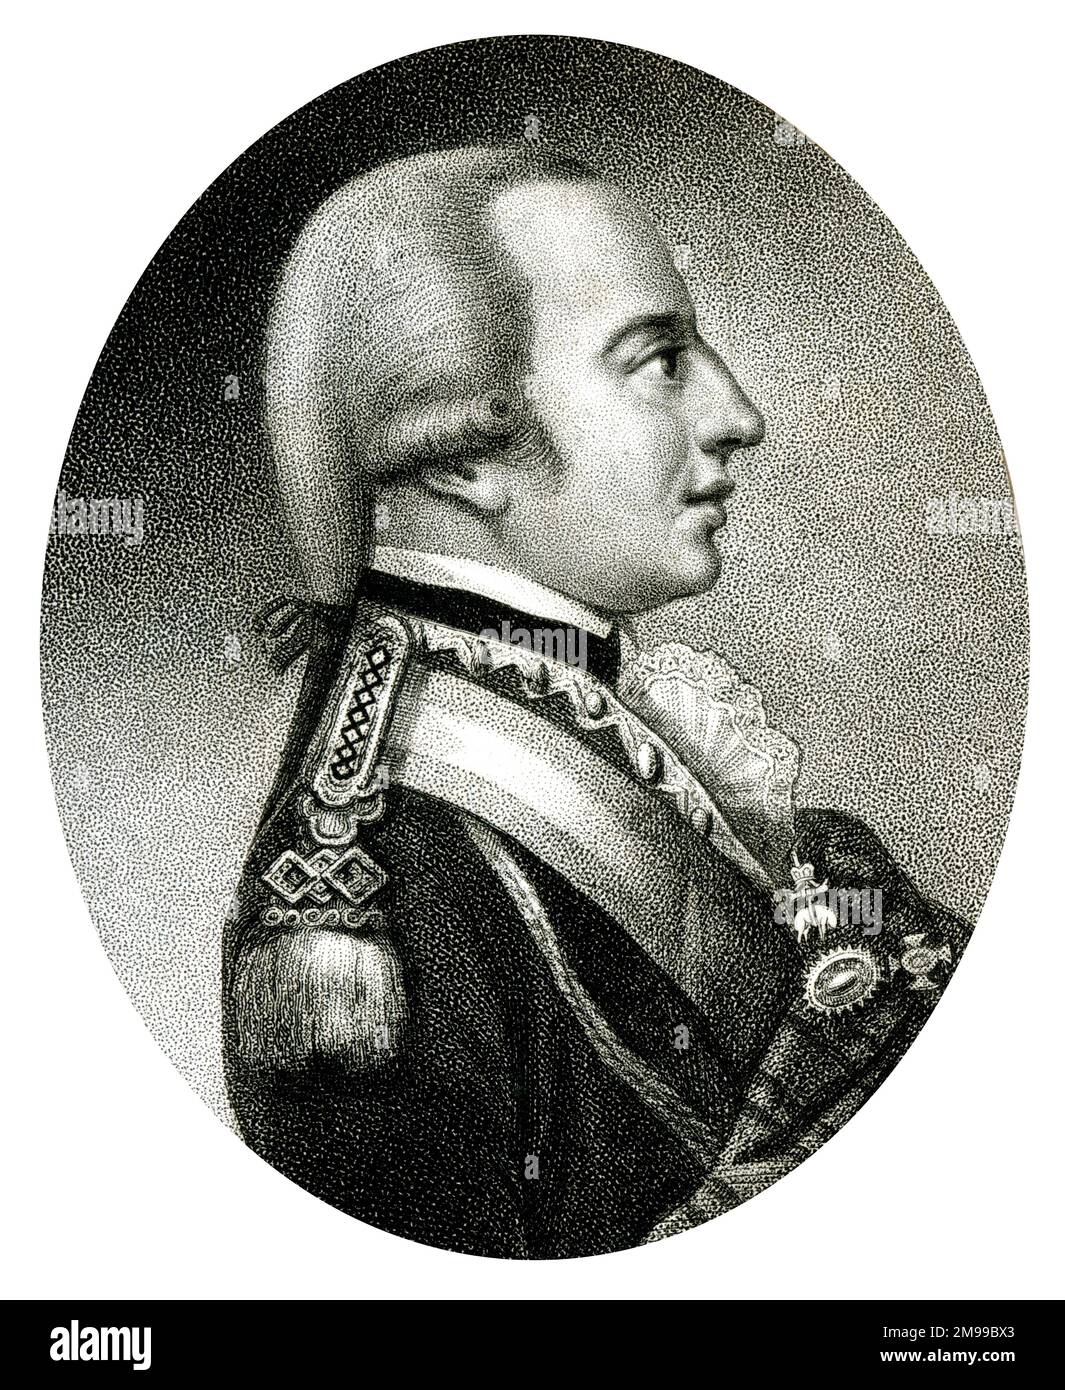 Imperatore Francesco (II e i) d'Austria, e successivamente imperatore del Sacro Romano Impero (1768-1835). Visto qui nell'uniforme di Field Marshal. Foto Stock